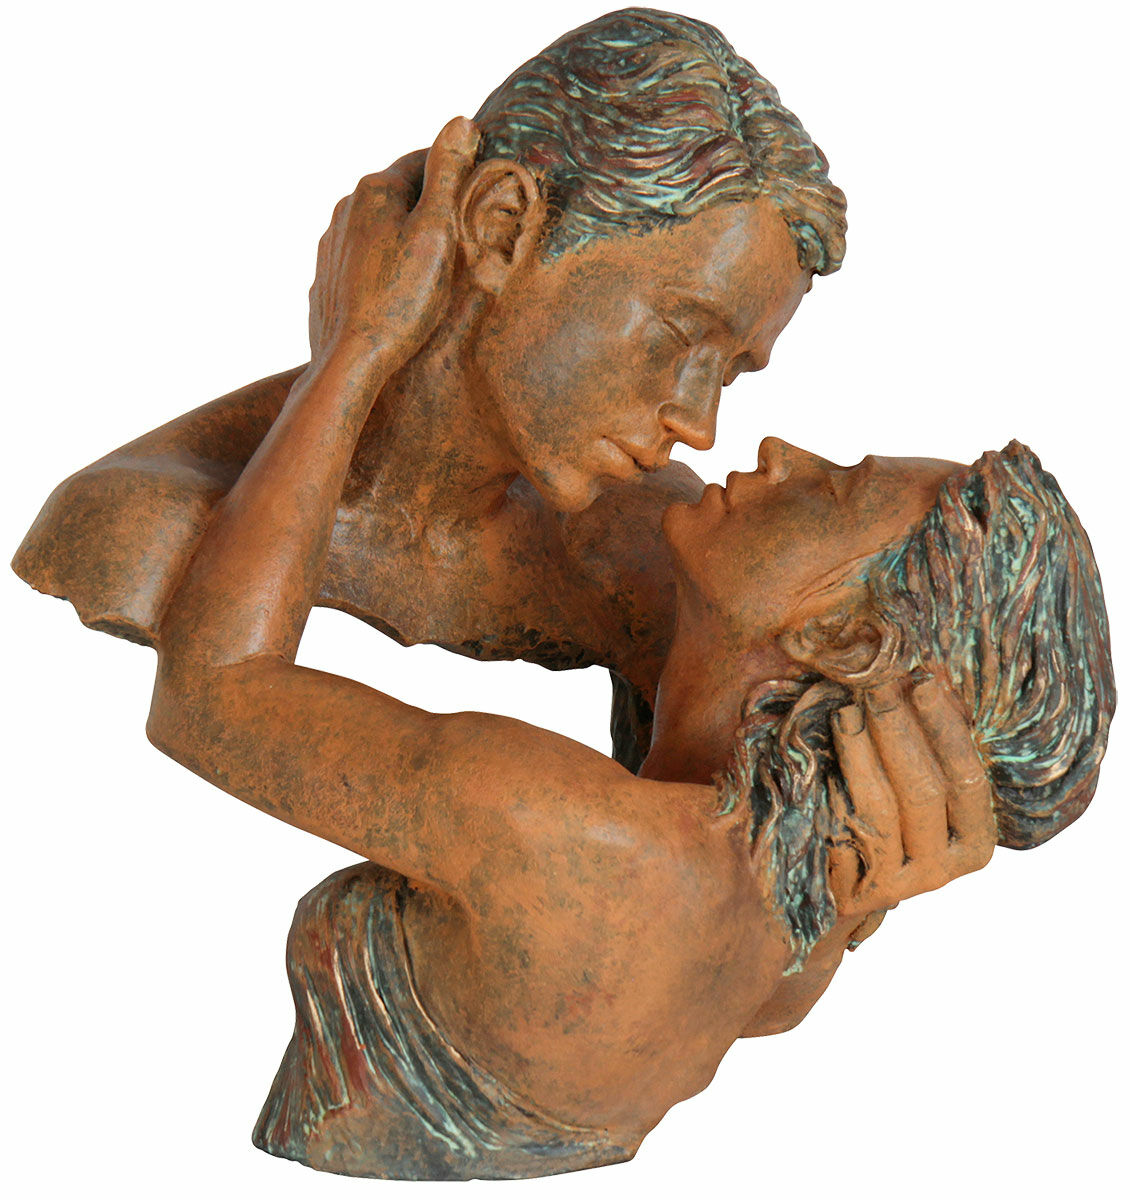 Skulptur "Passion", kunstig sten von Angeles Anglada